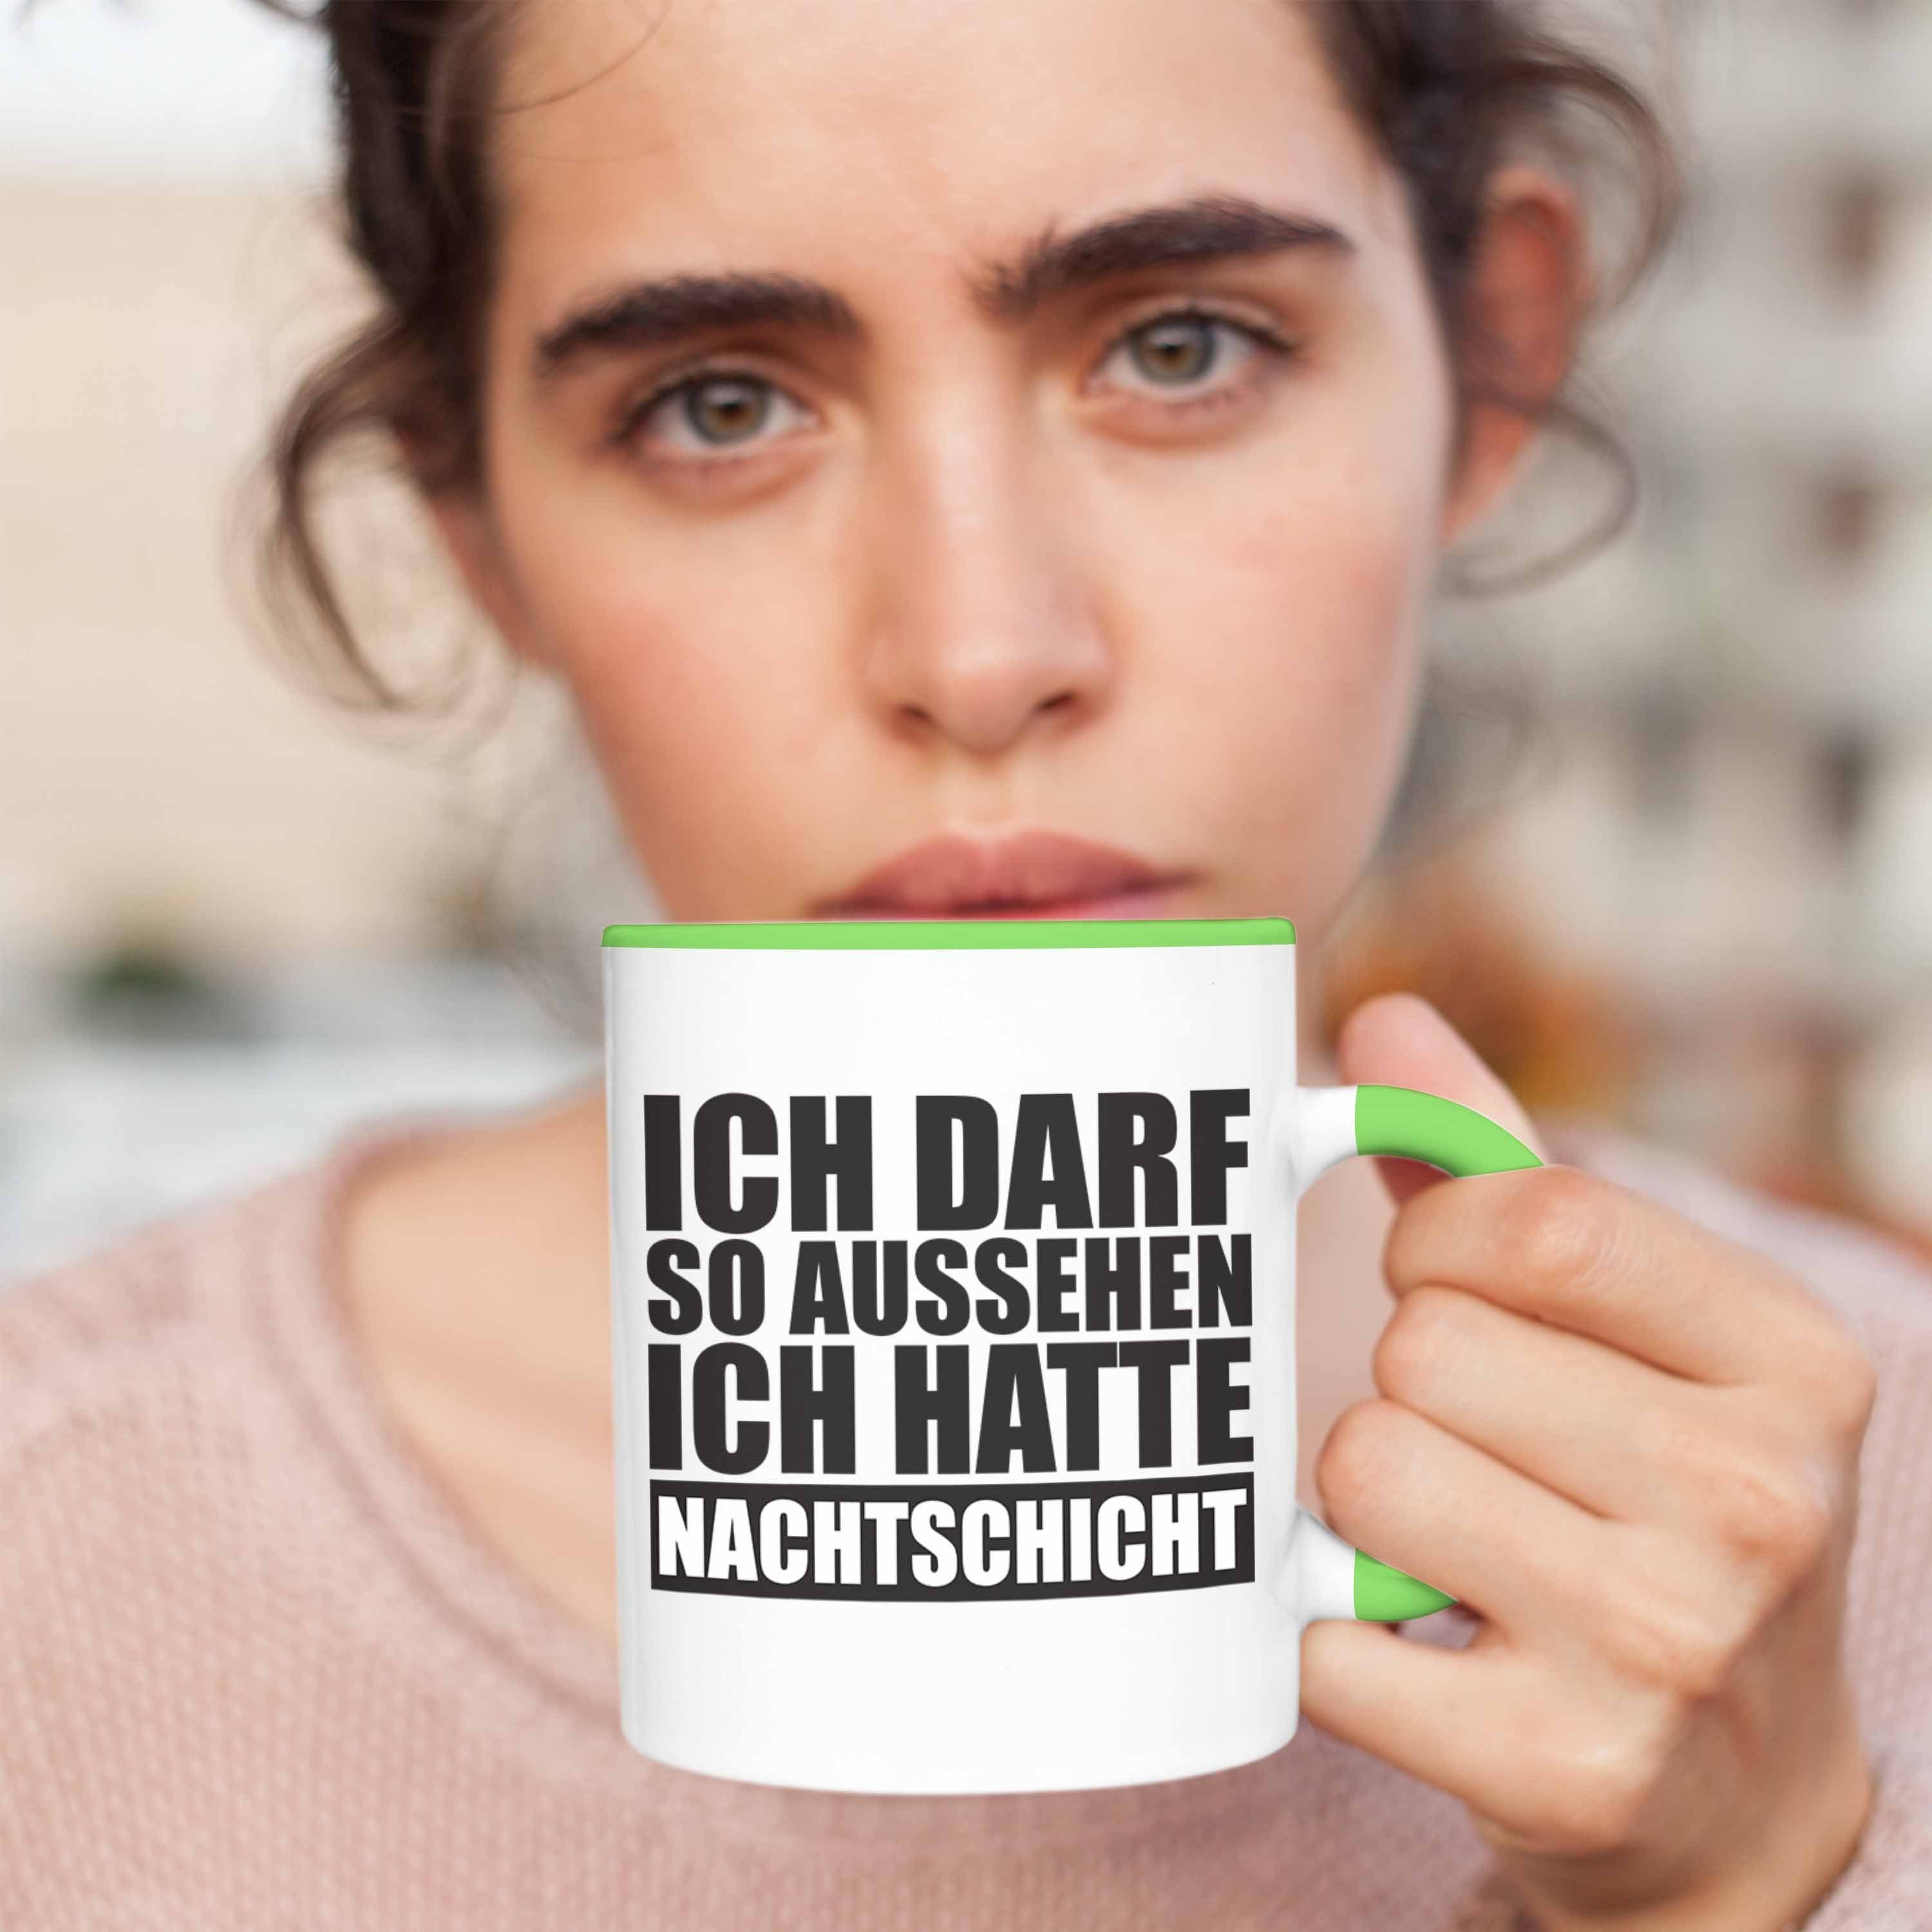 Trendation Tasse Trendation Darf Nachtschicht - So mit Spruch Ich Tasse Kollege Hatte Geschenk Grün Ich Aussehen